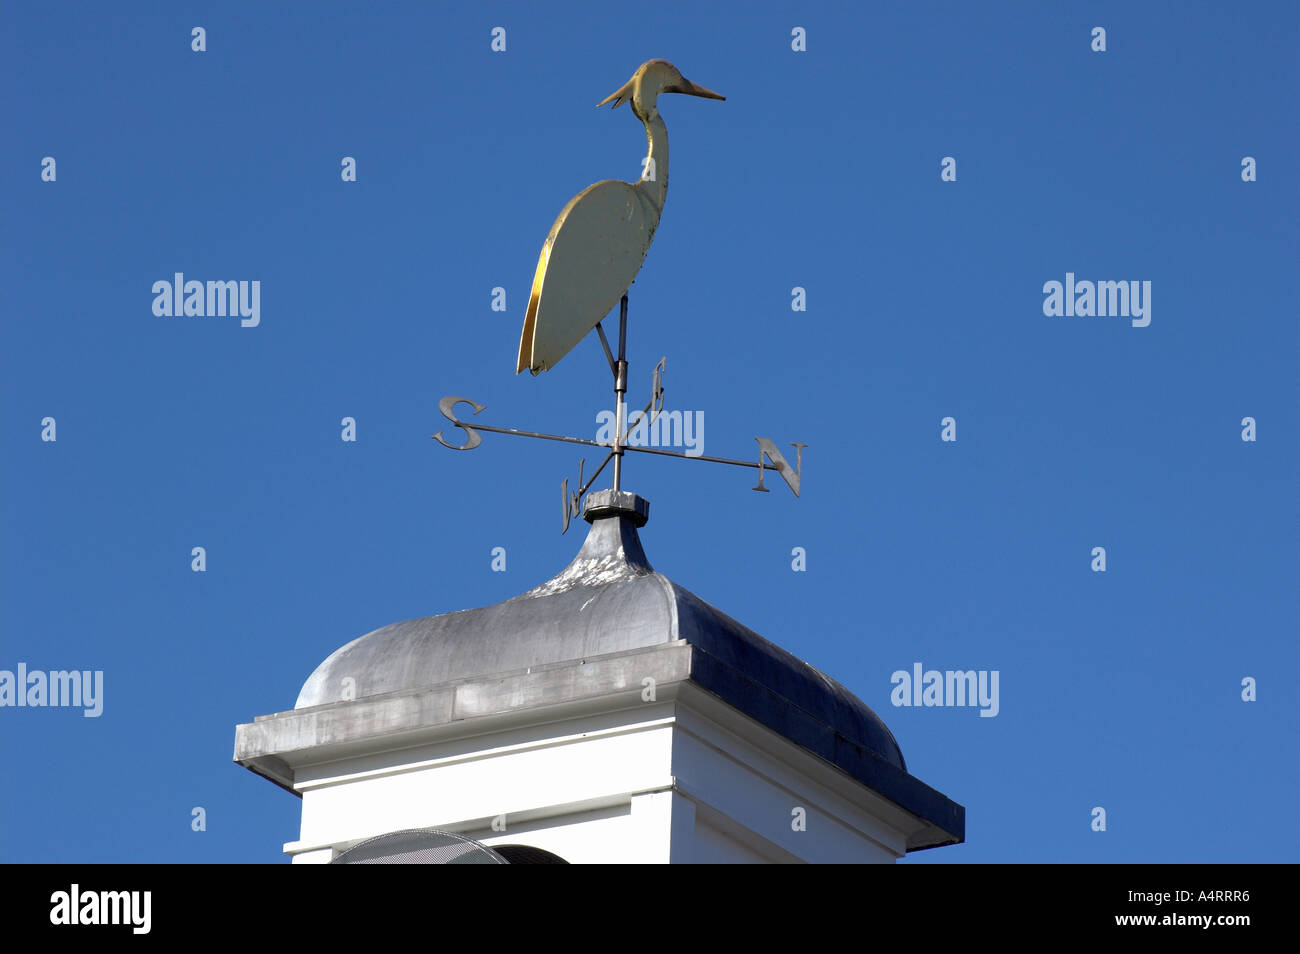 Veleta representando una cigüeña, adornando un tejado contra un cielo azul brillante. Tattenhall cerca de Chester. Foto de stock